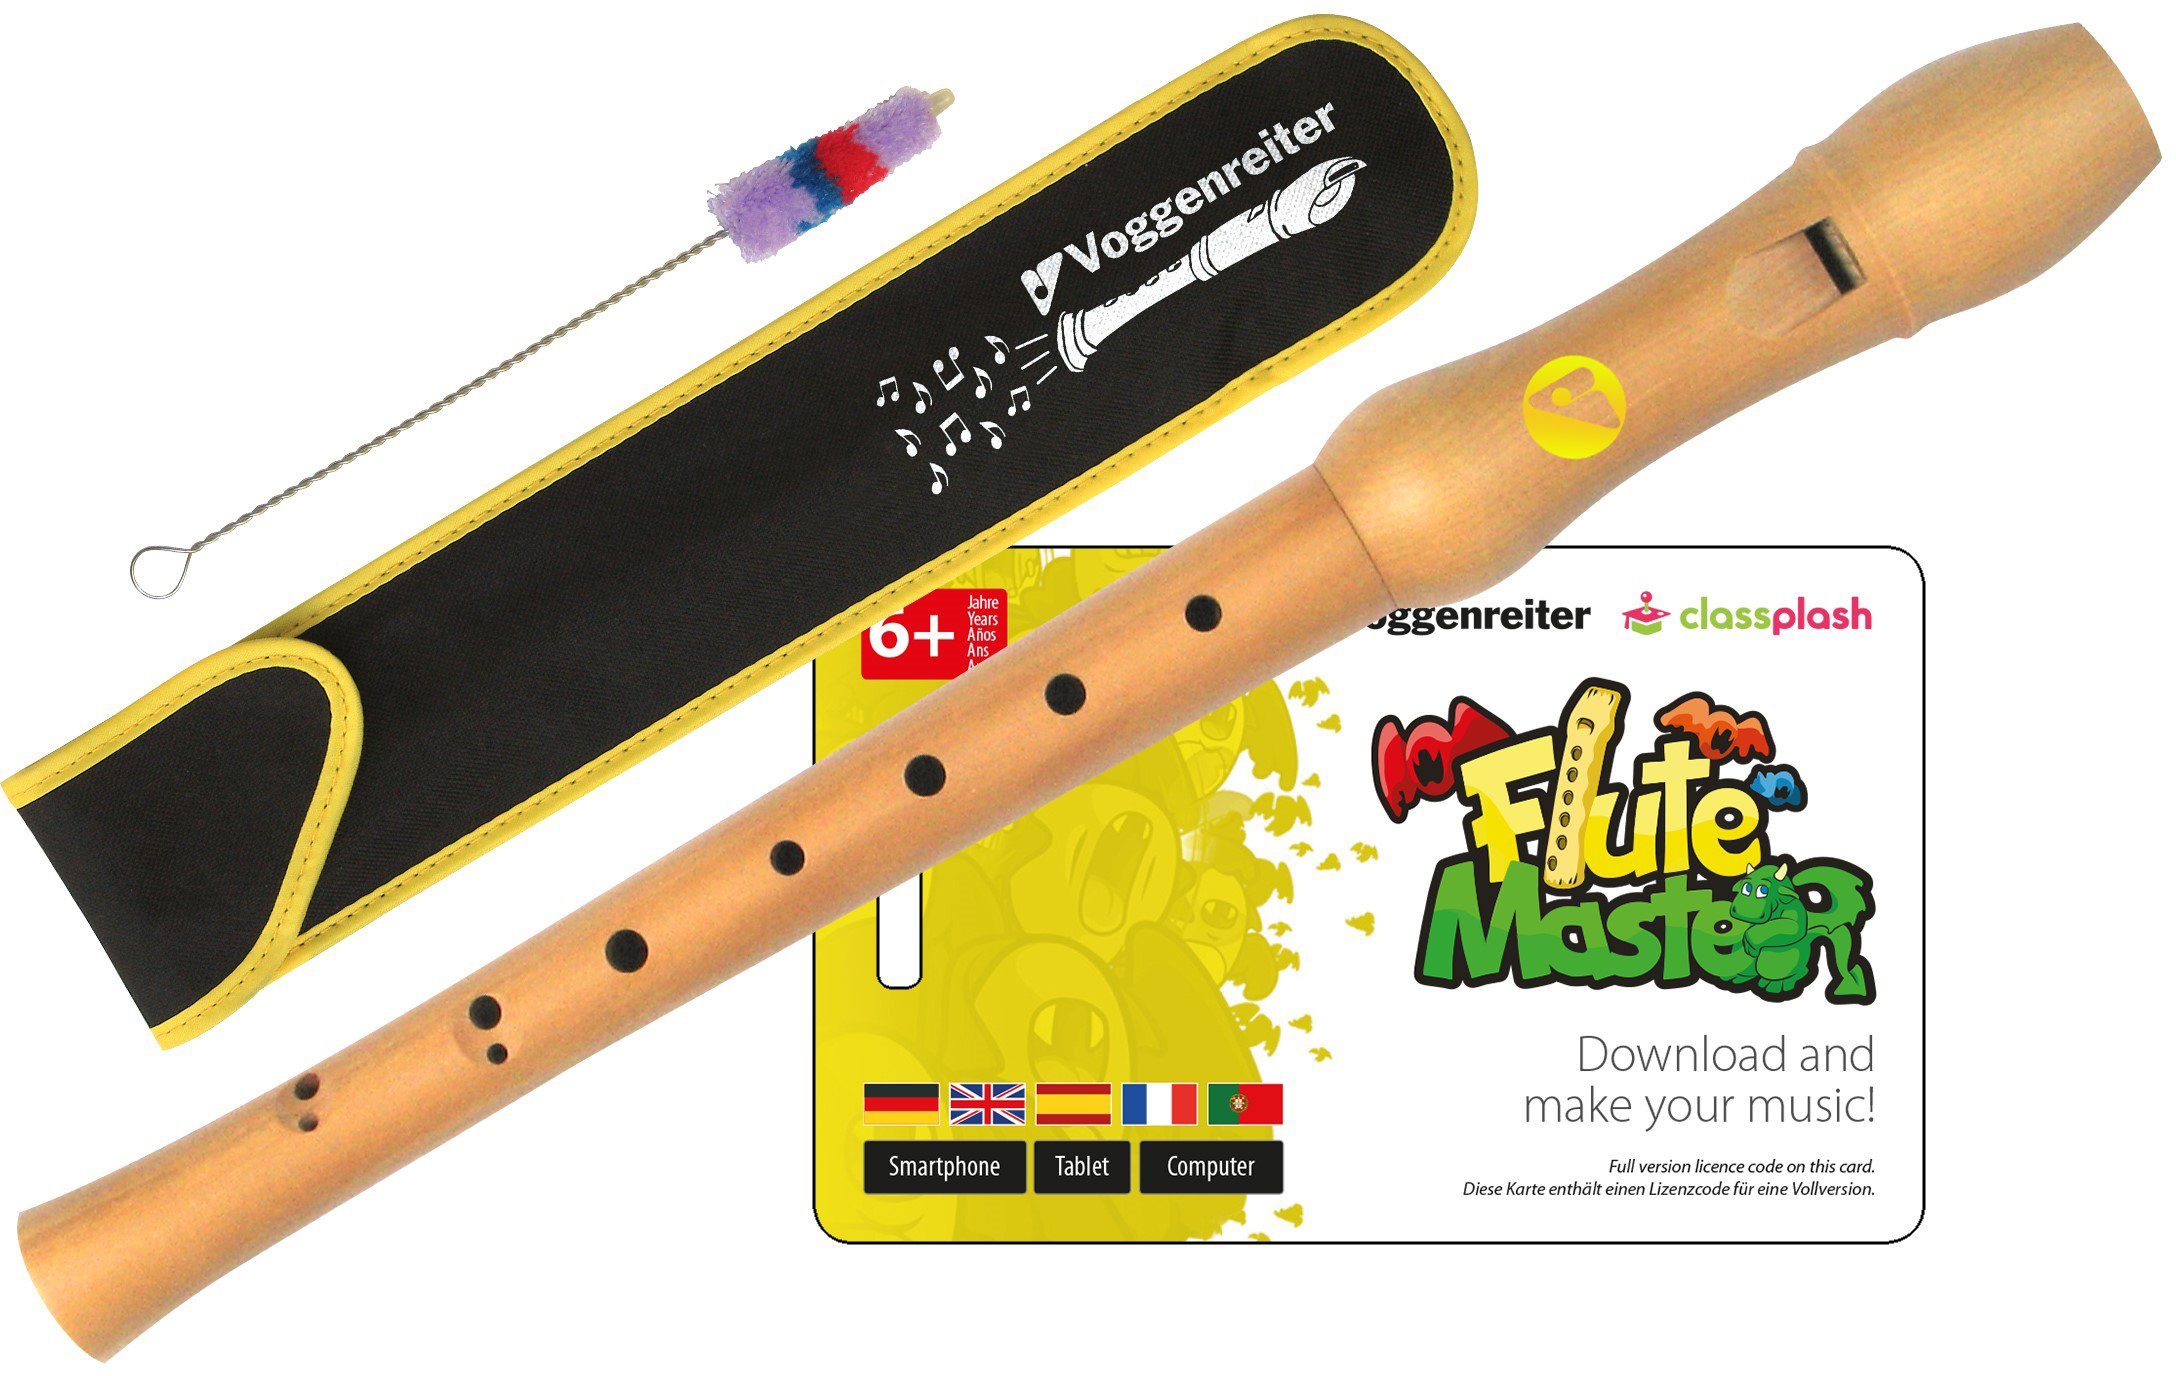 Voggenreiter Blockflöte Flute Master (Lernsoftware) mit Blockflöte, barocke  Griffweise, (Barock)